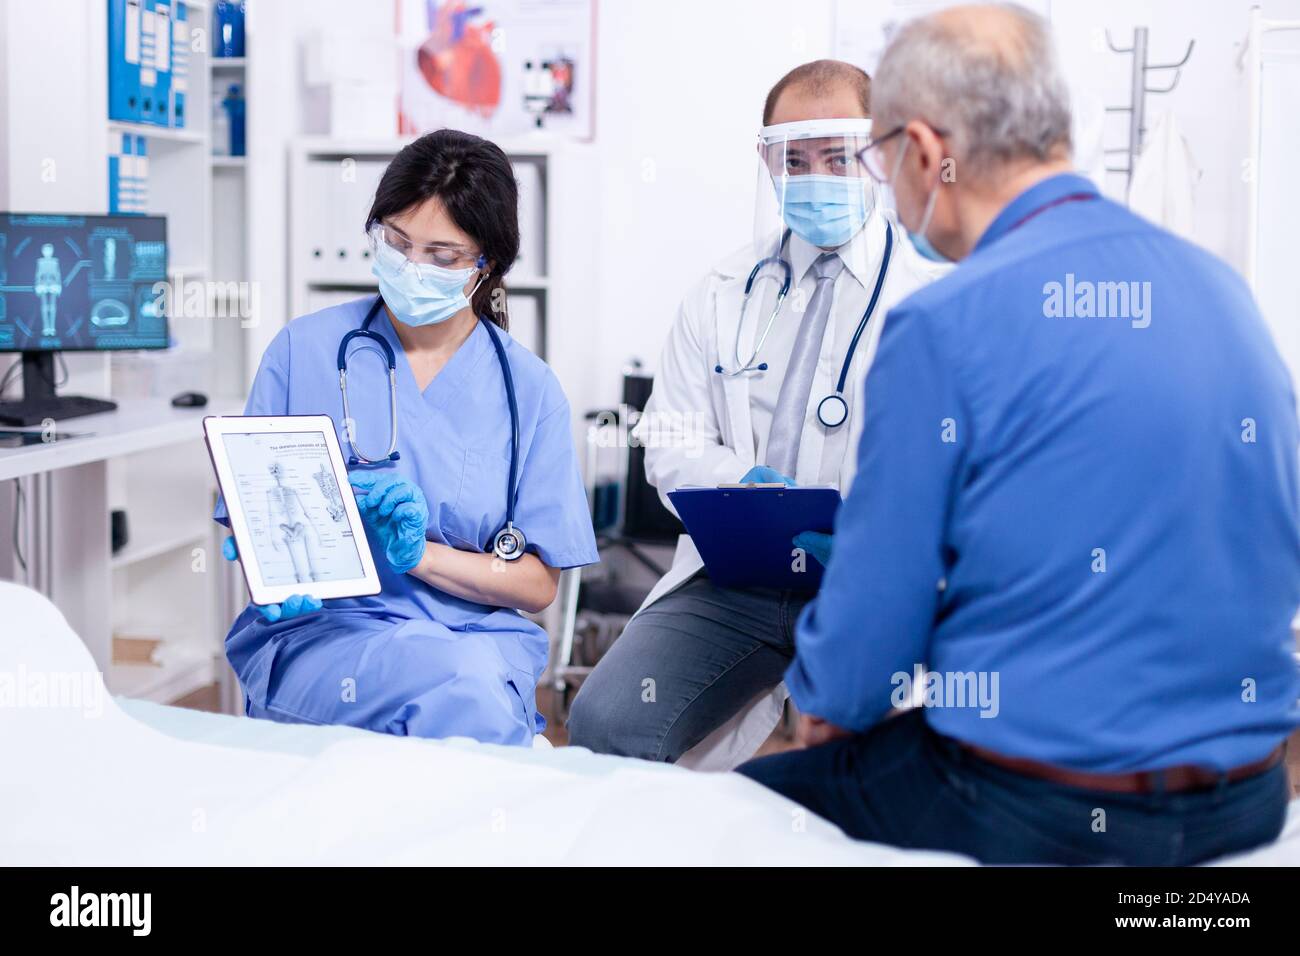 Medico e infermiere che spiegano la radiografia all'uomo anziano durante la consultazione sul pc della compressa in ospedale con protezione mas contro covid-19. Visita medica per infezioni, malattie e diagnosi. Foto Stock